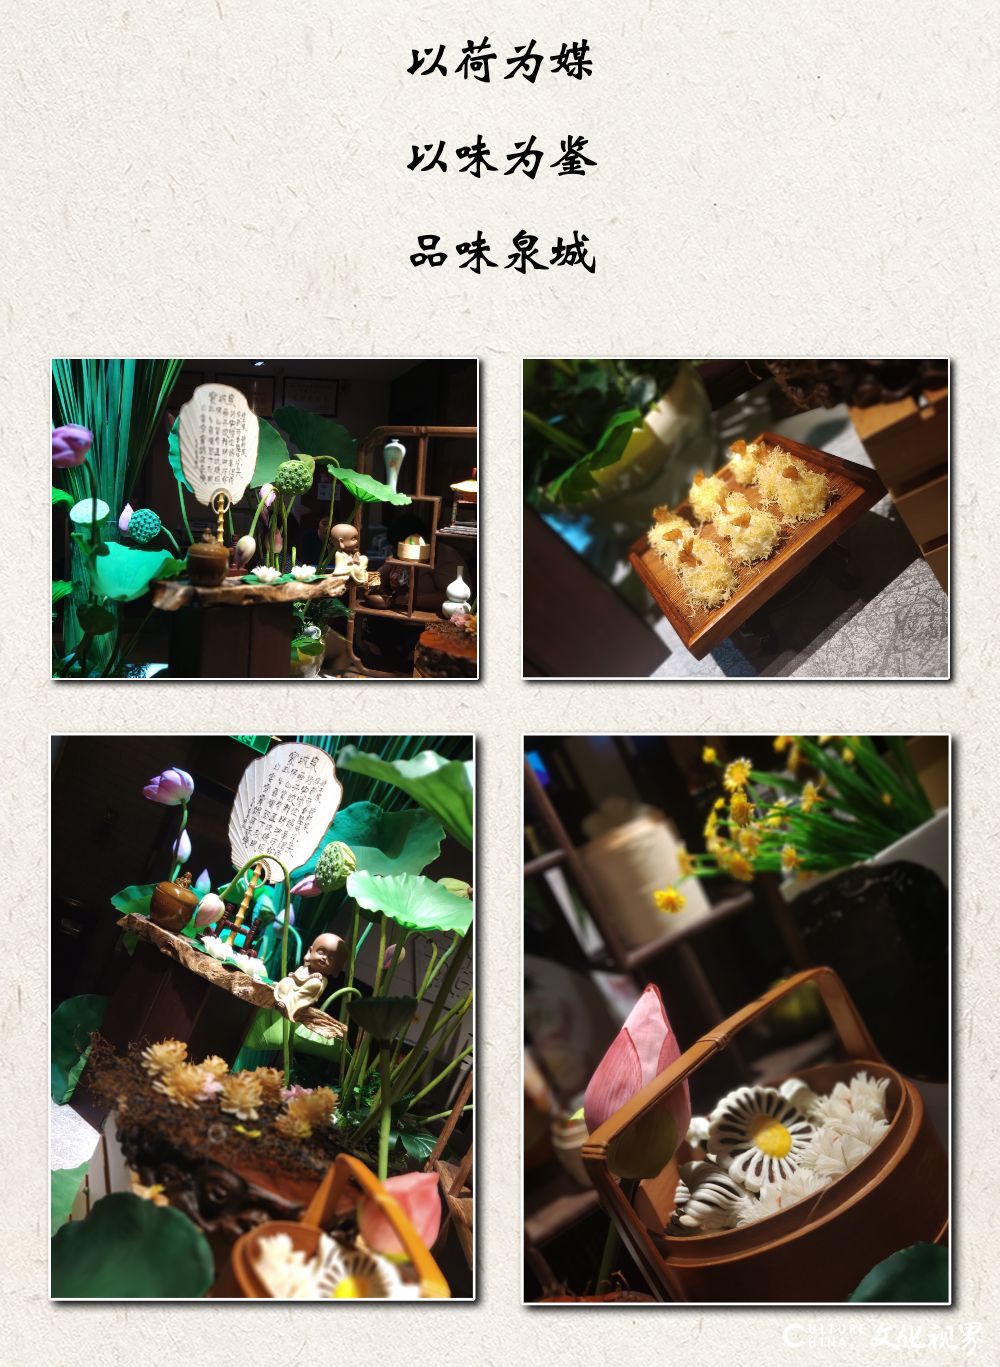 “健康饮食引领者”——济南泉城大酒店精品鲁菜美食月邀您共品佳肴